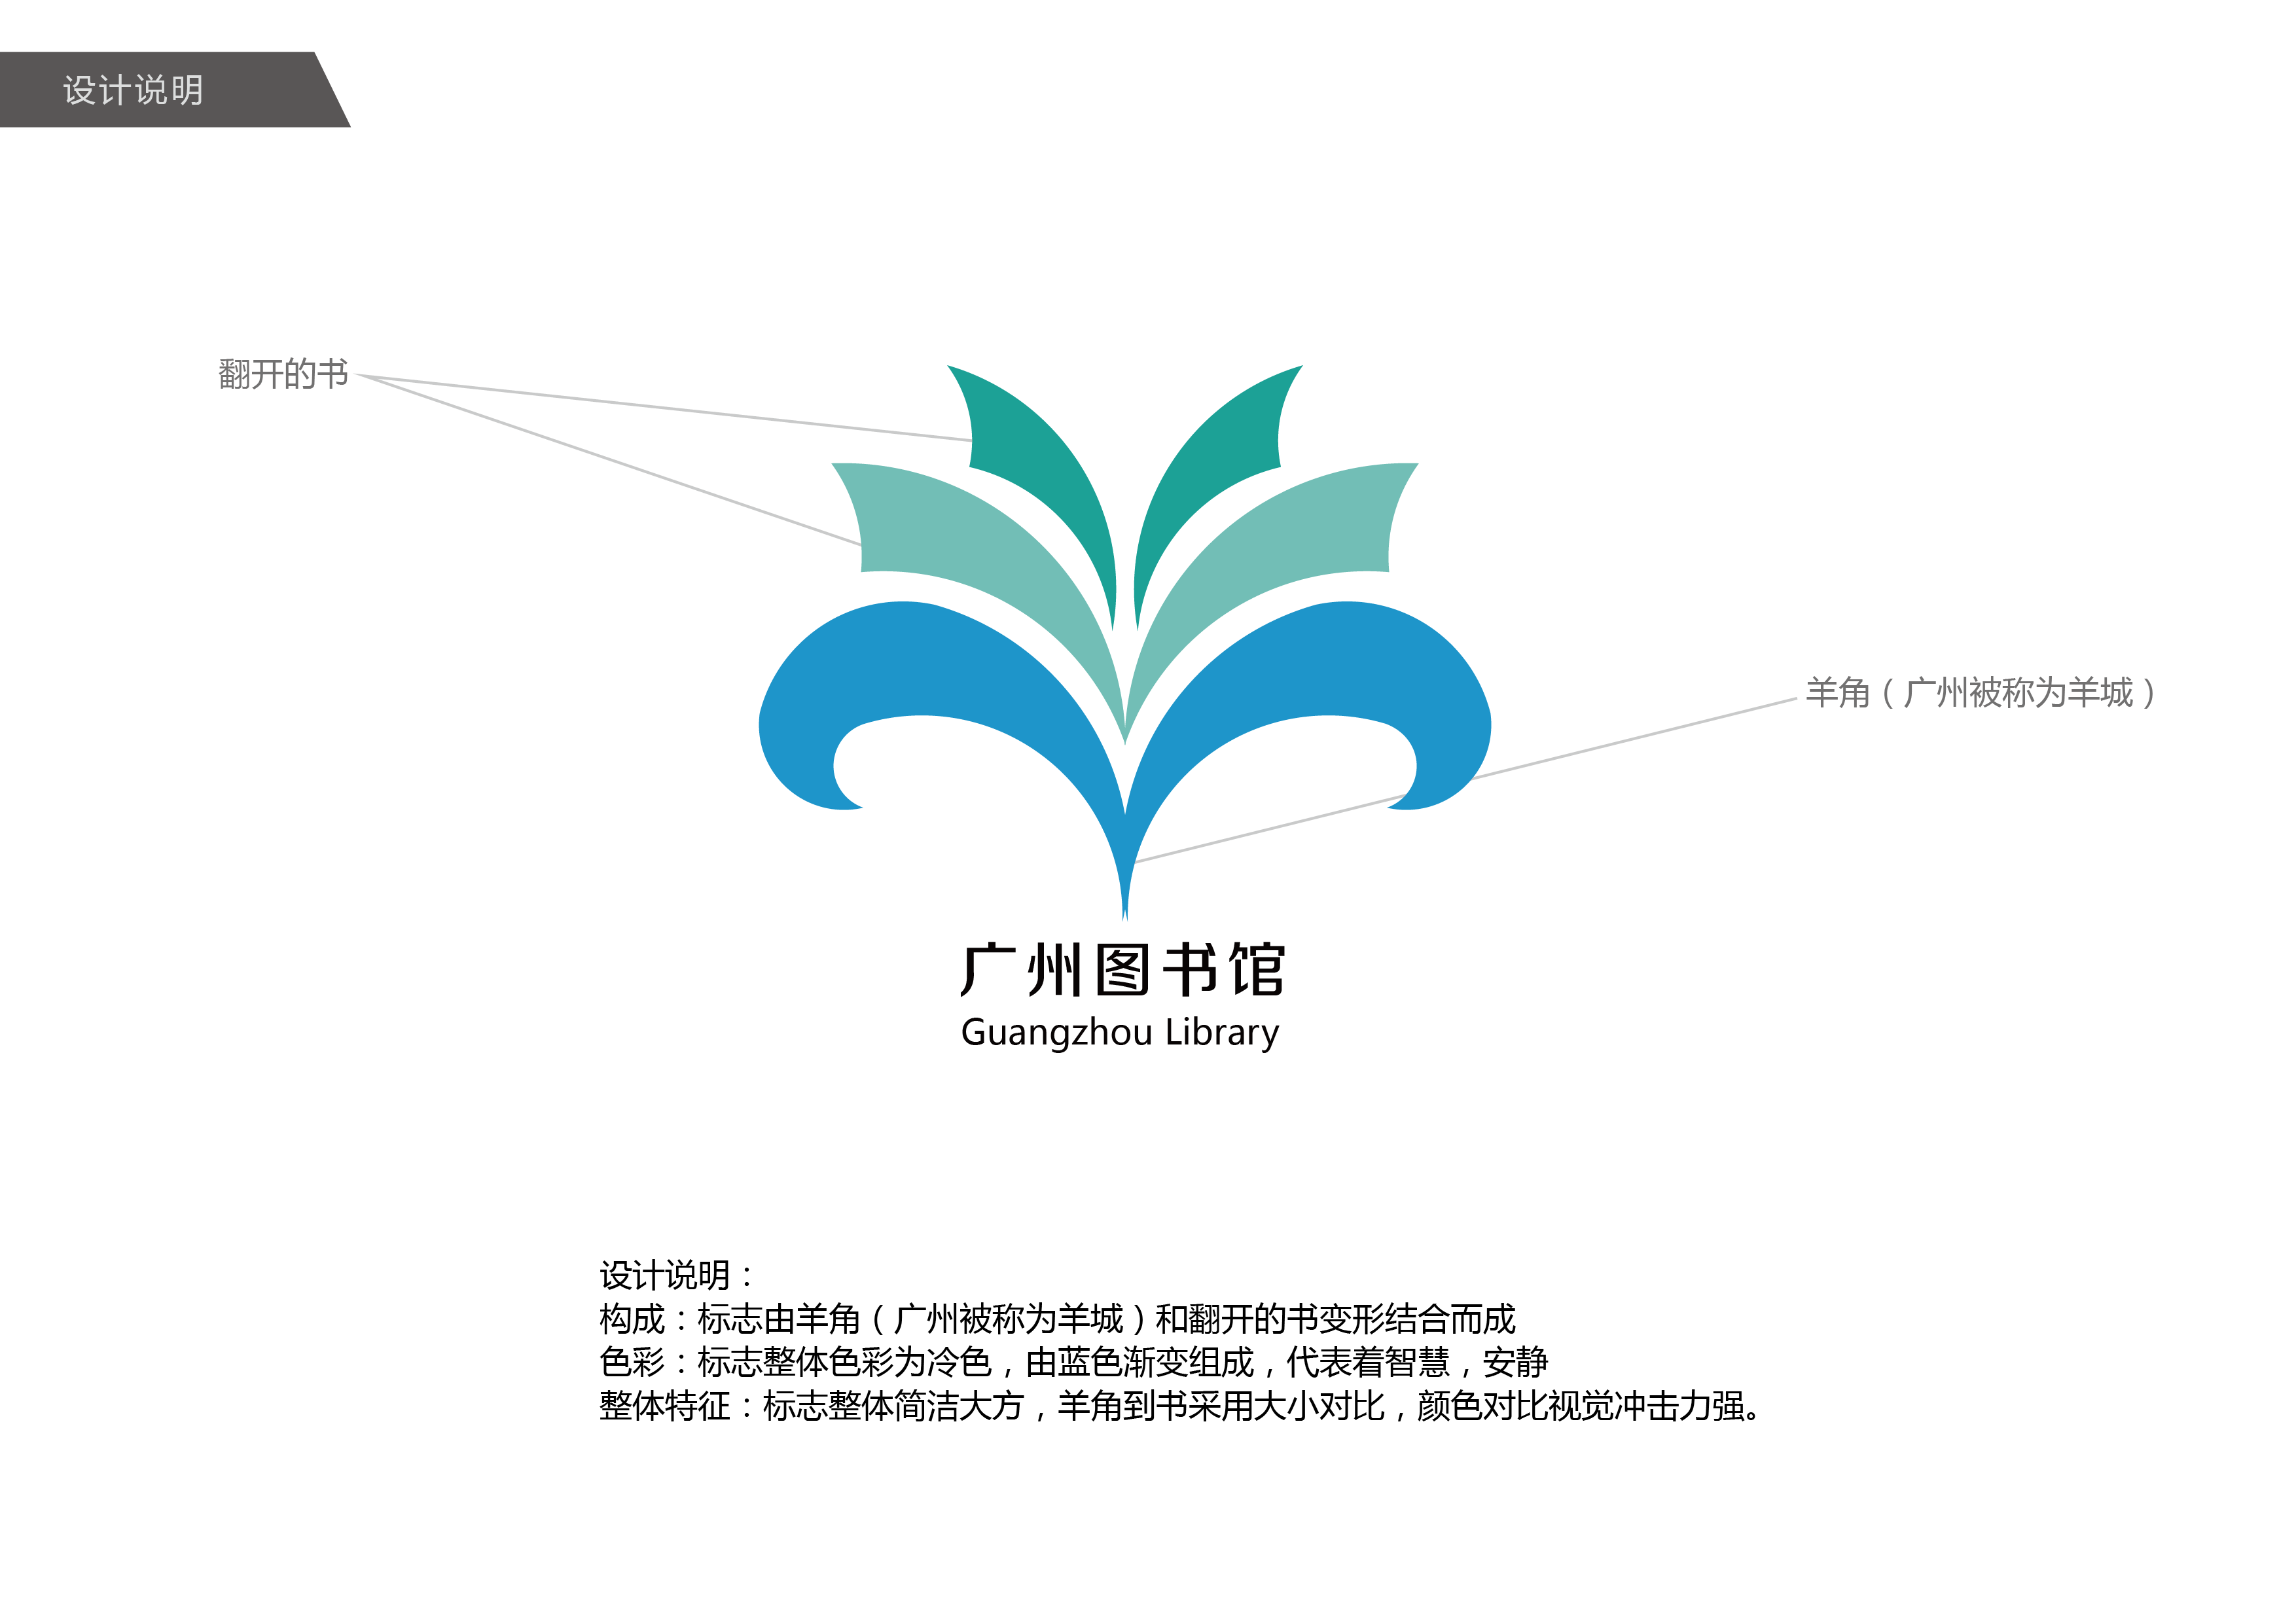 广州图书馆logo设计  设计说明: 构成